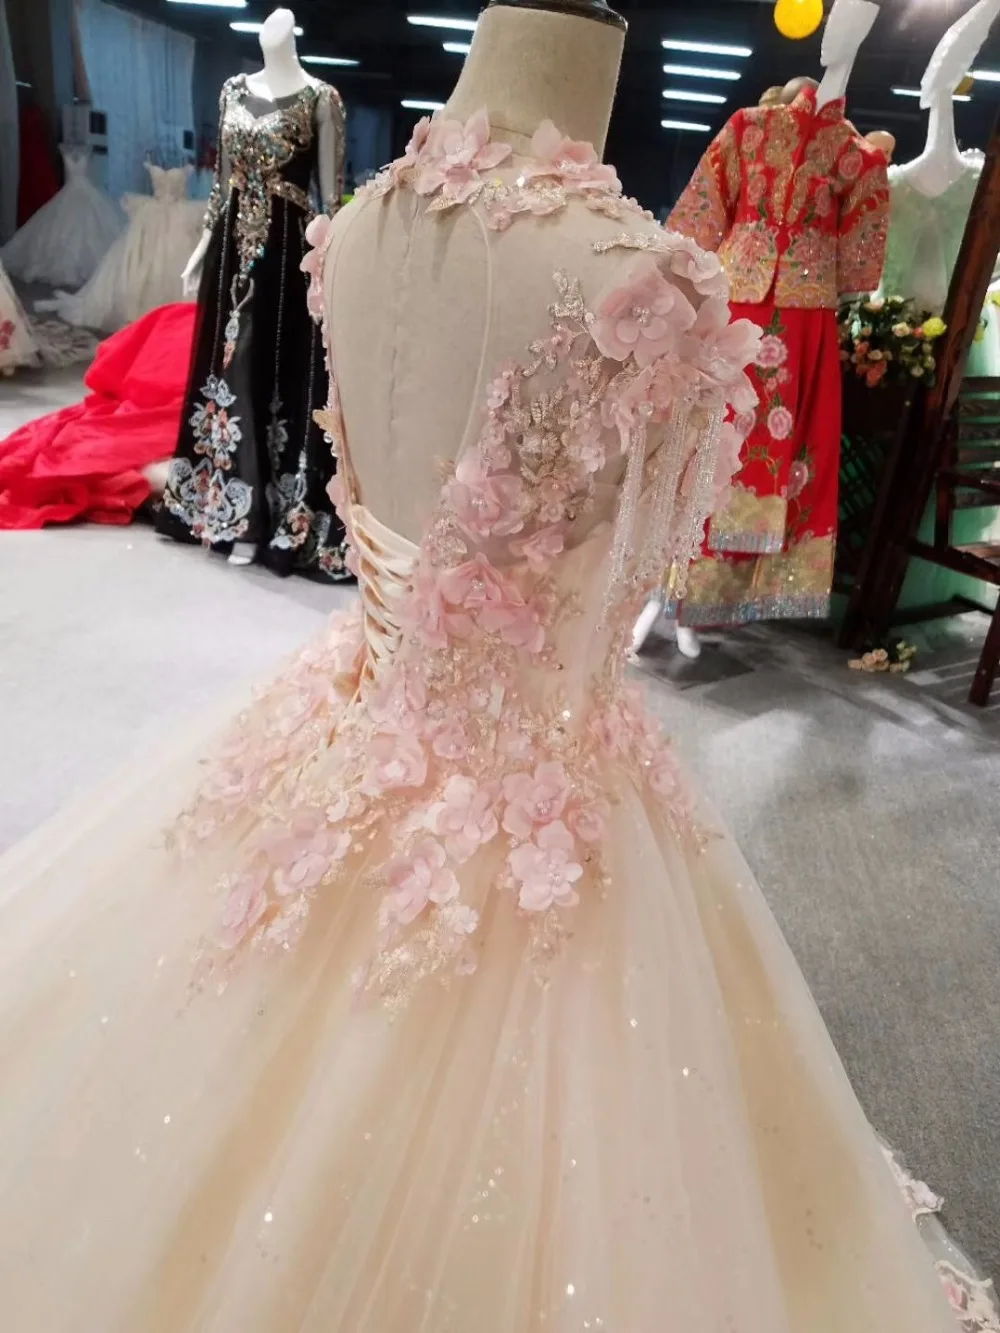 CloverBridal список лучших продавцов alibaba розничный магазин невесты платье принцессы длиной в Пол, розовое платье с кристаллами и кисточками на плечах